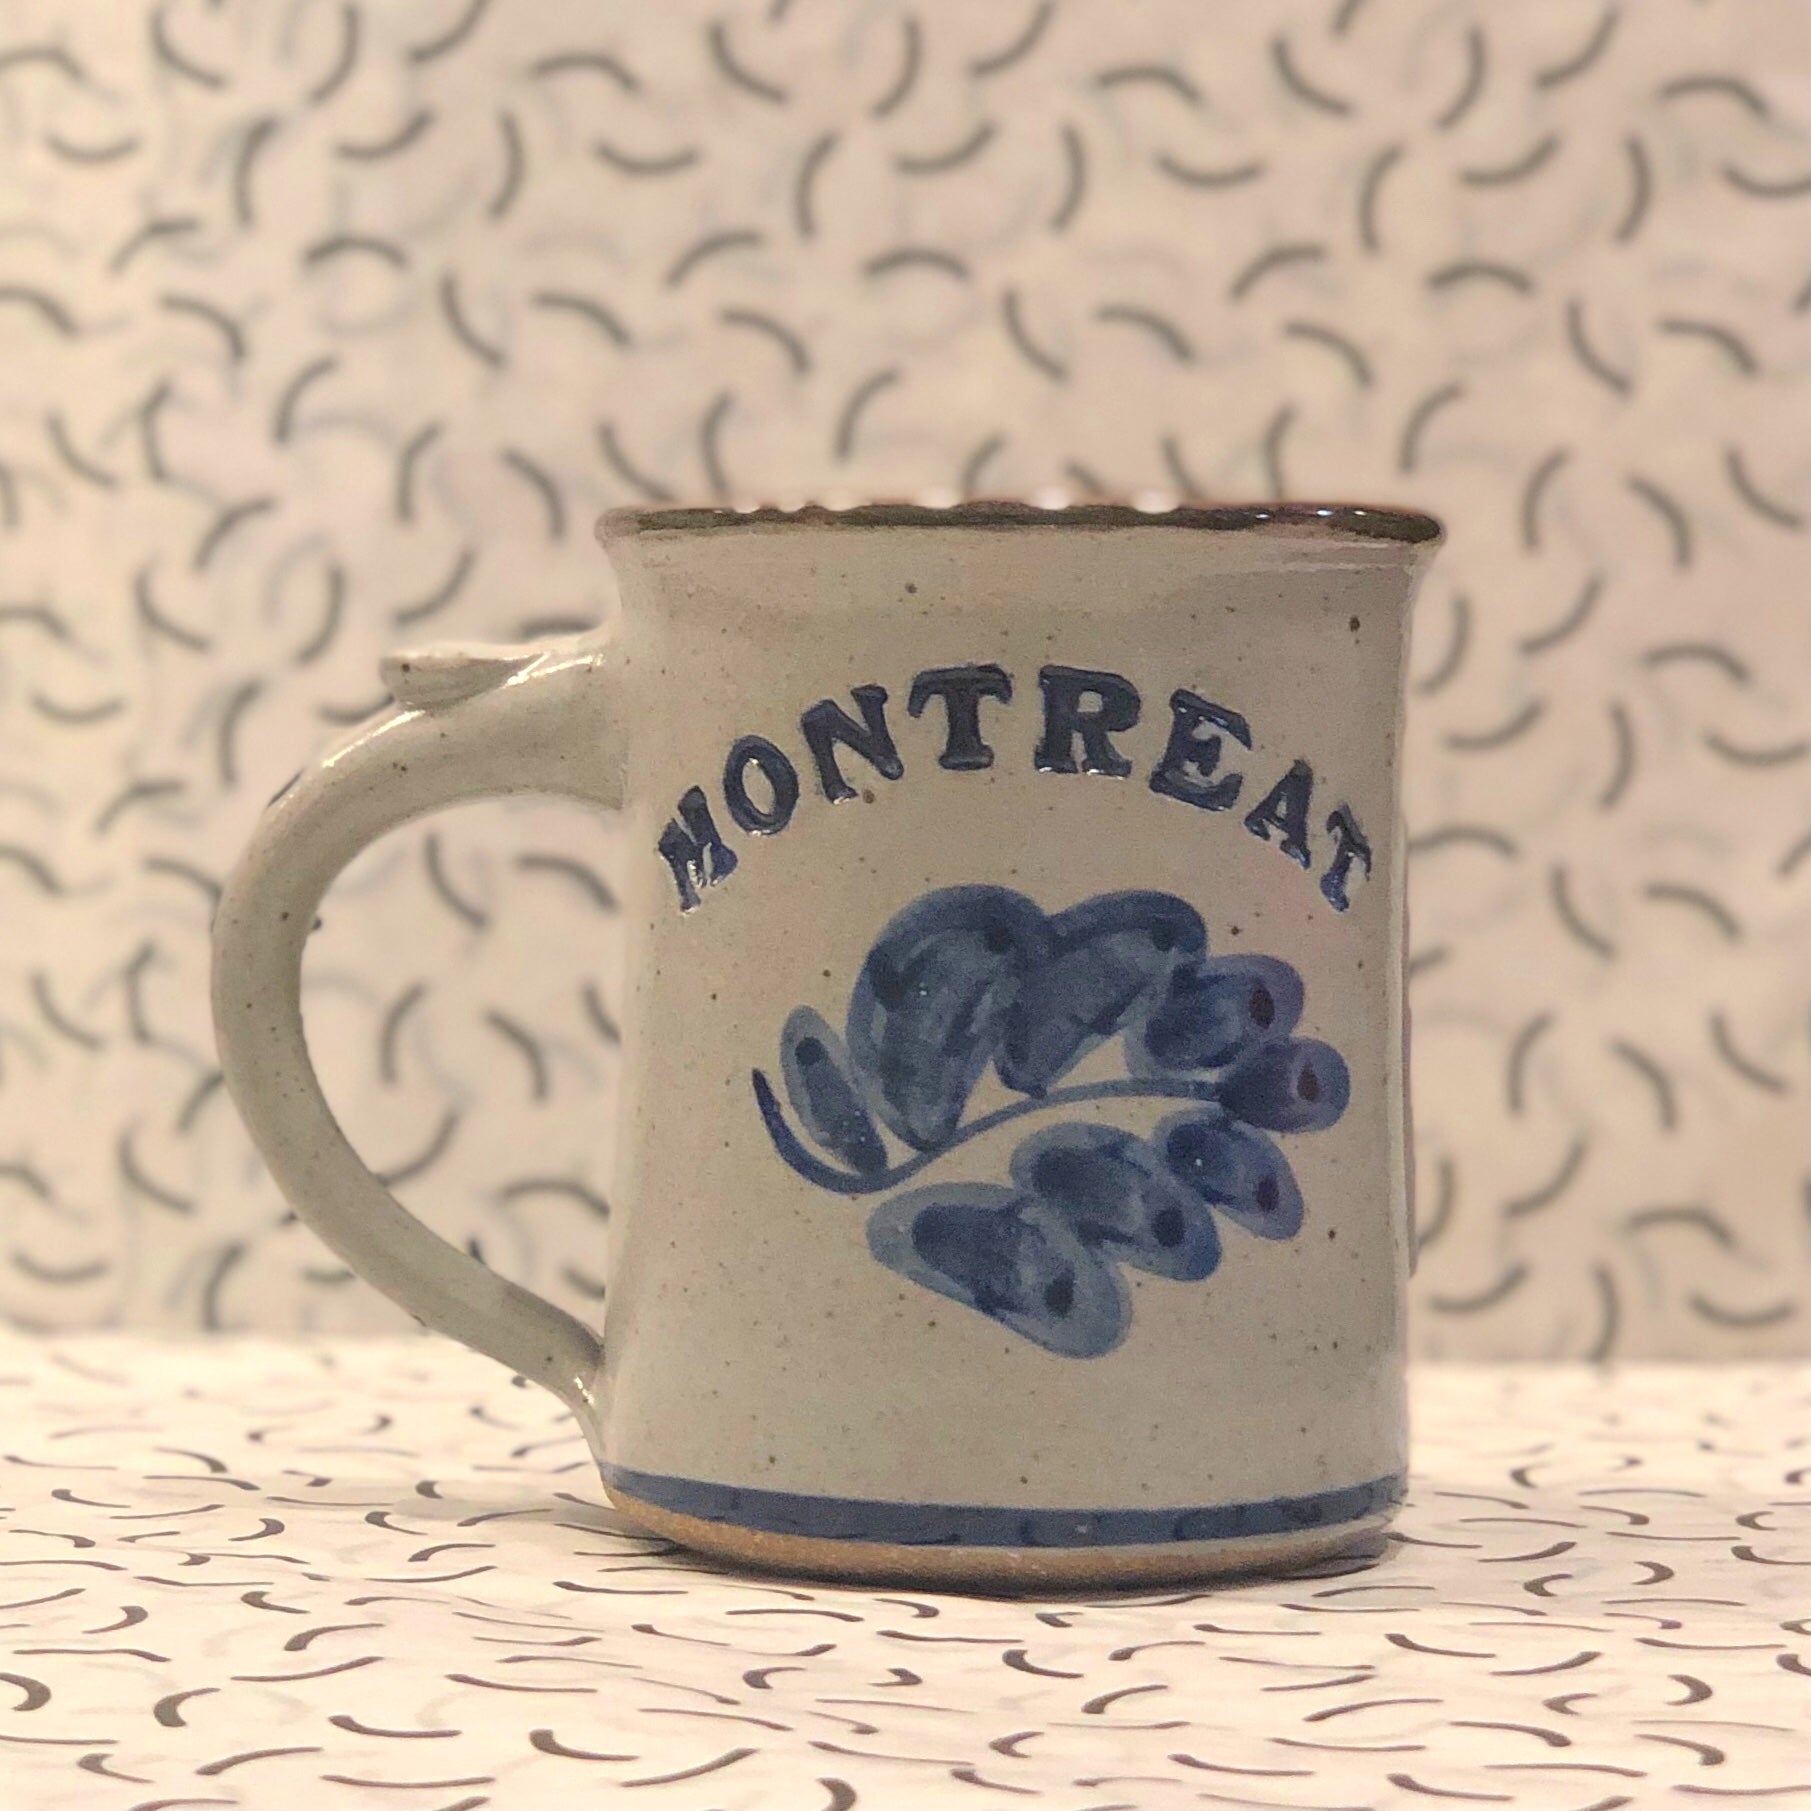 Montreat Mug (Vine)